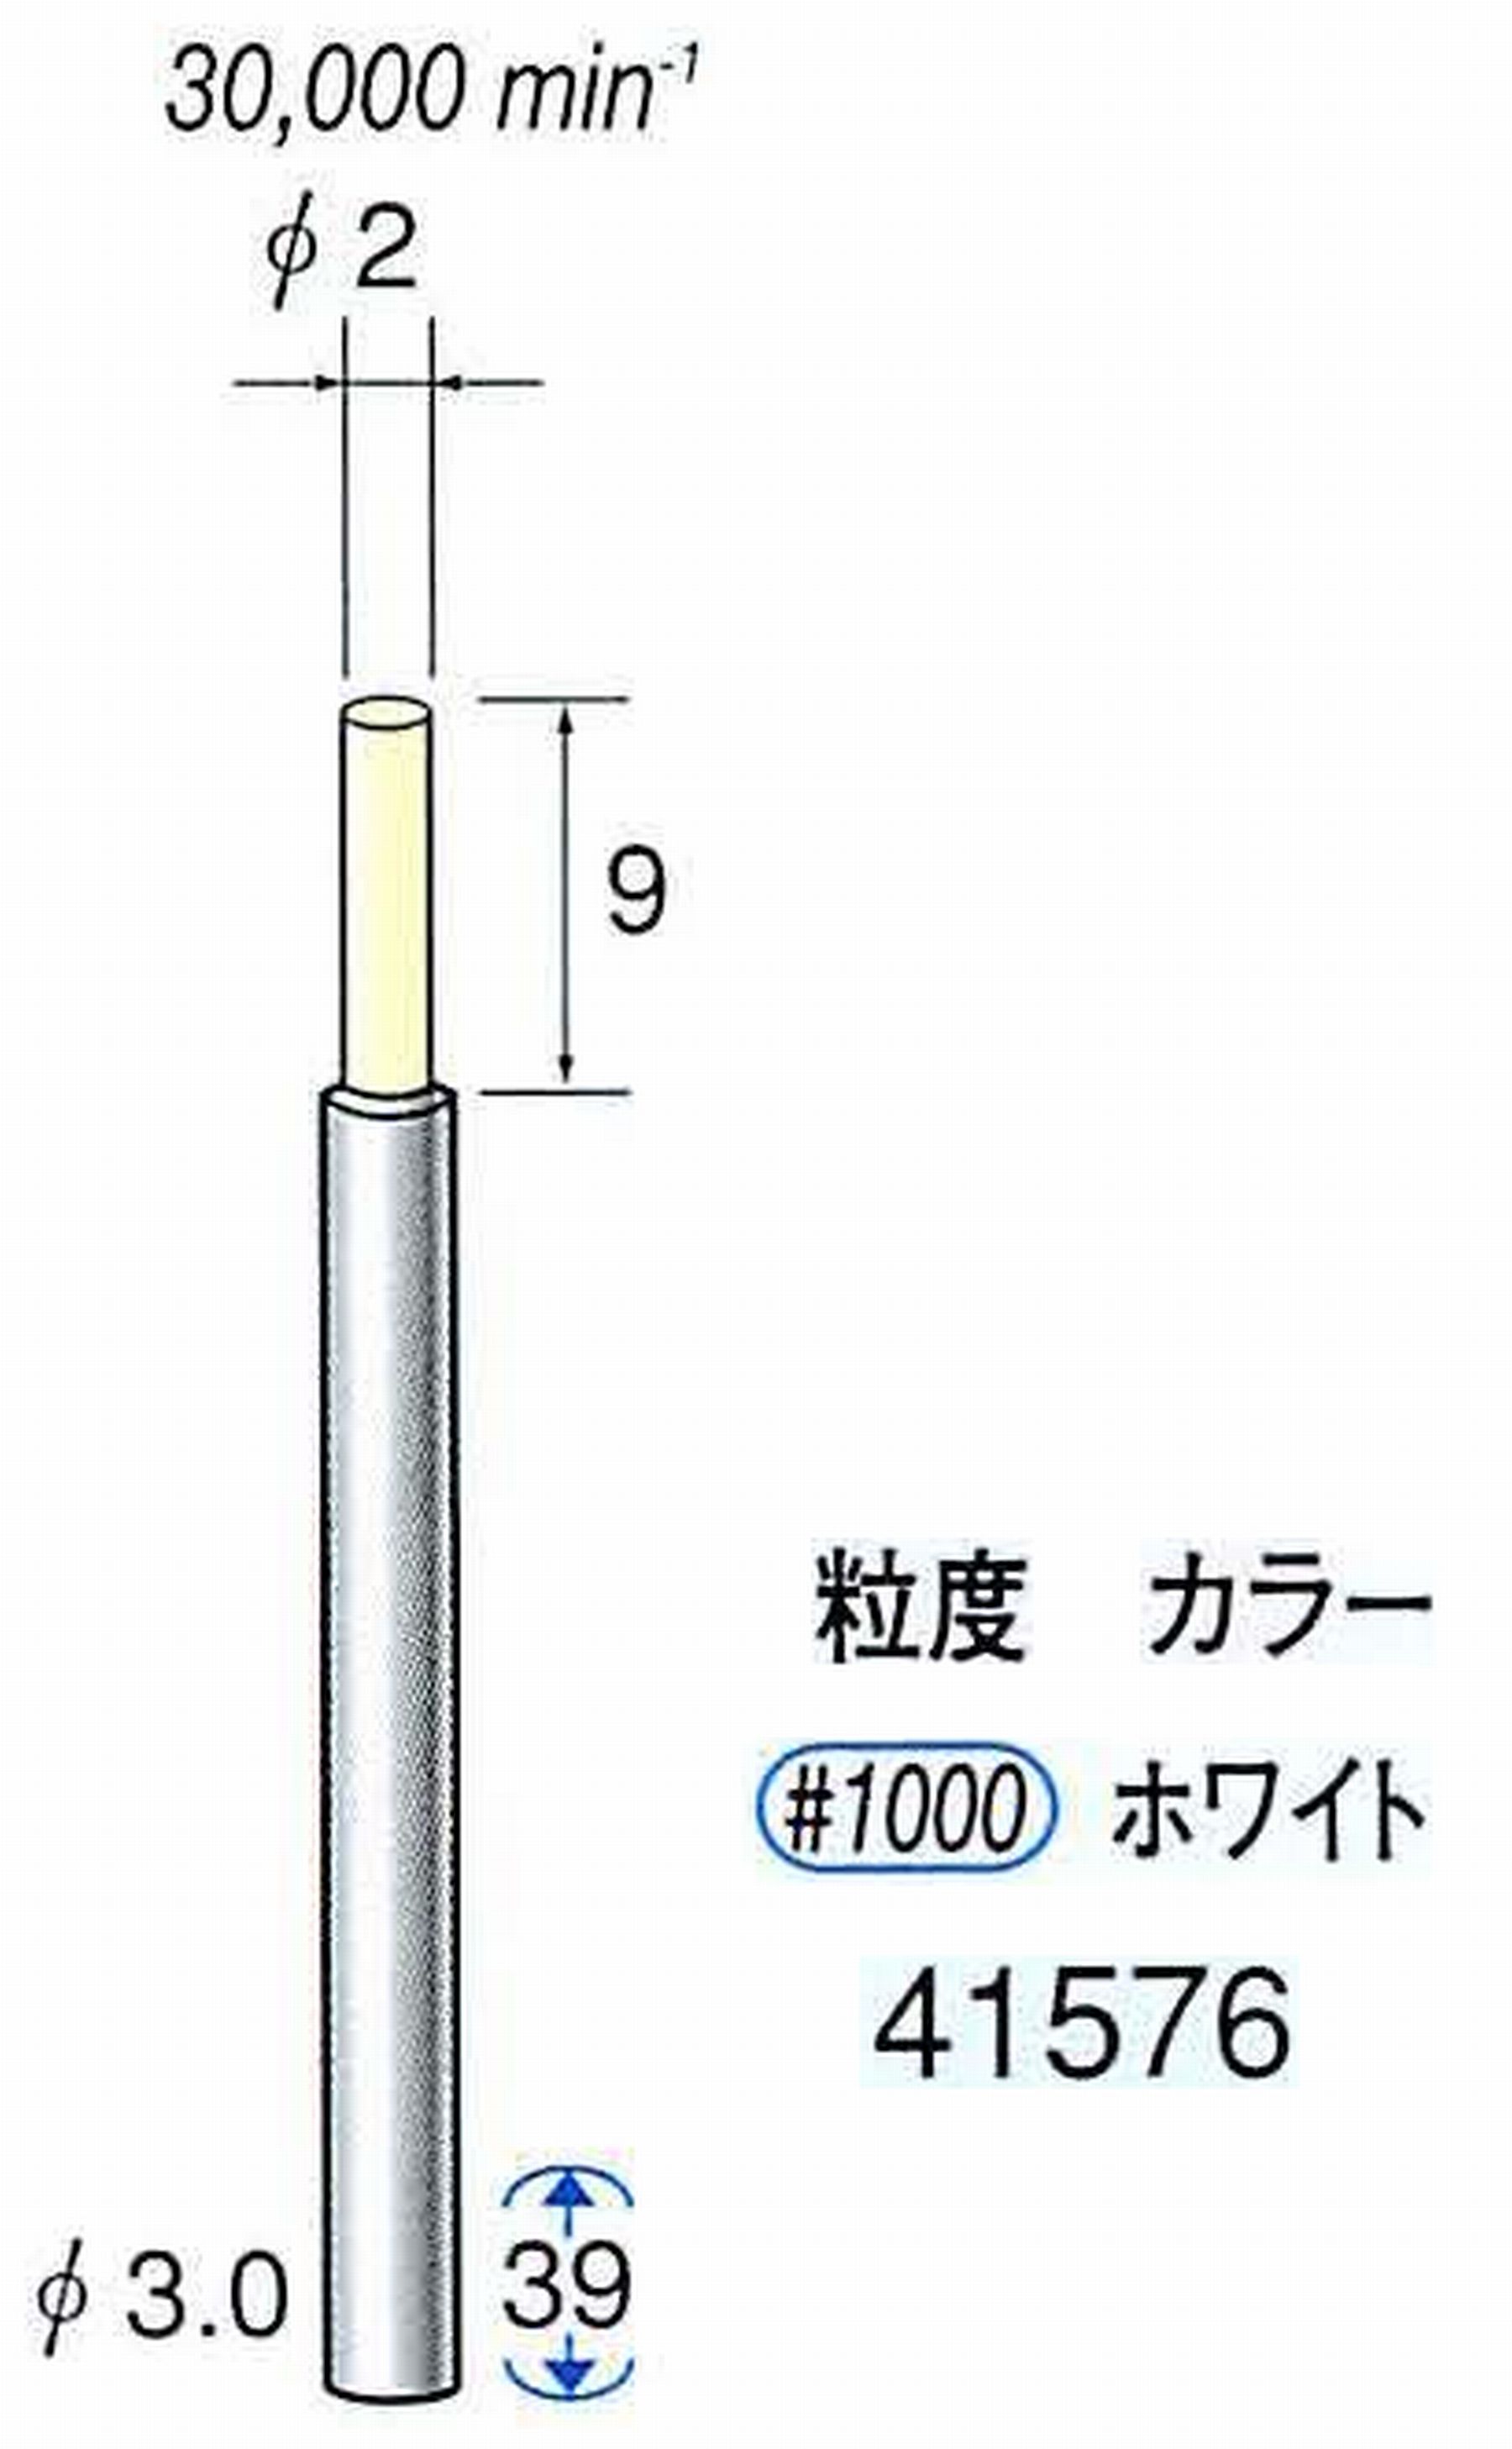 ナカニシ/NAKANISHI セラファイバー精密軸付砥石(カラー ホワイト) 軸径(シャンク) φ3.0mm 41576